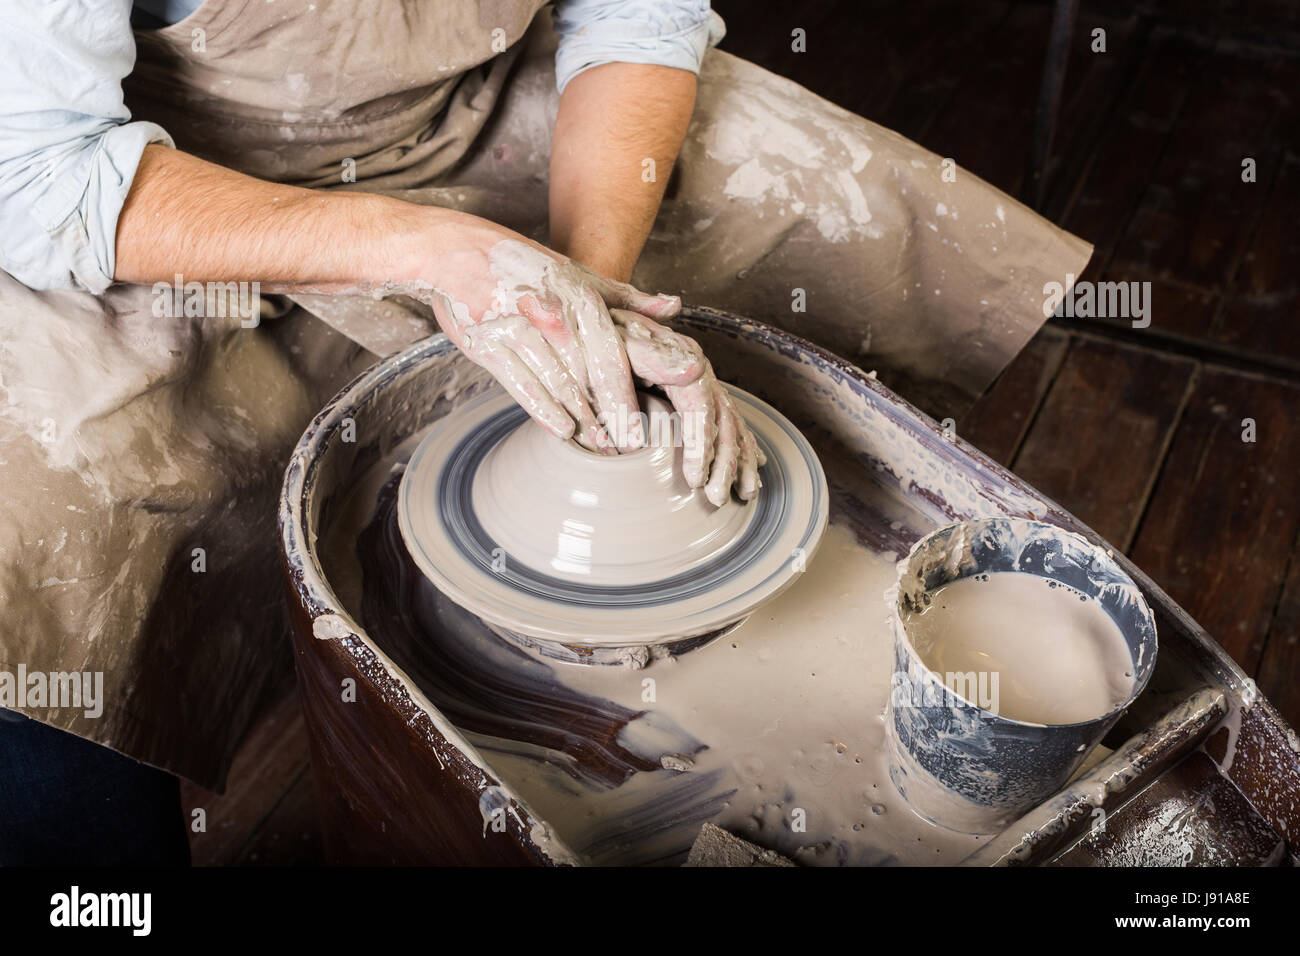 Atelier de poterie, céramique, concept art - close-up sur le travail de  potier avec l'argile brute et l'homme les mains, un homme sculpt un  ustensile avec les doigts, maître en tablier, vue